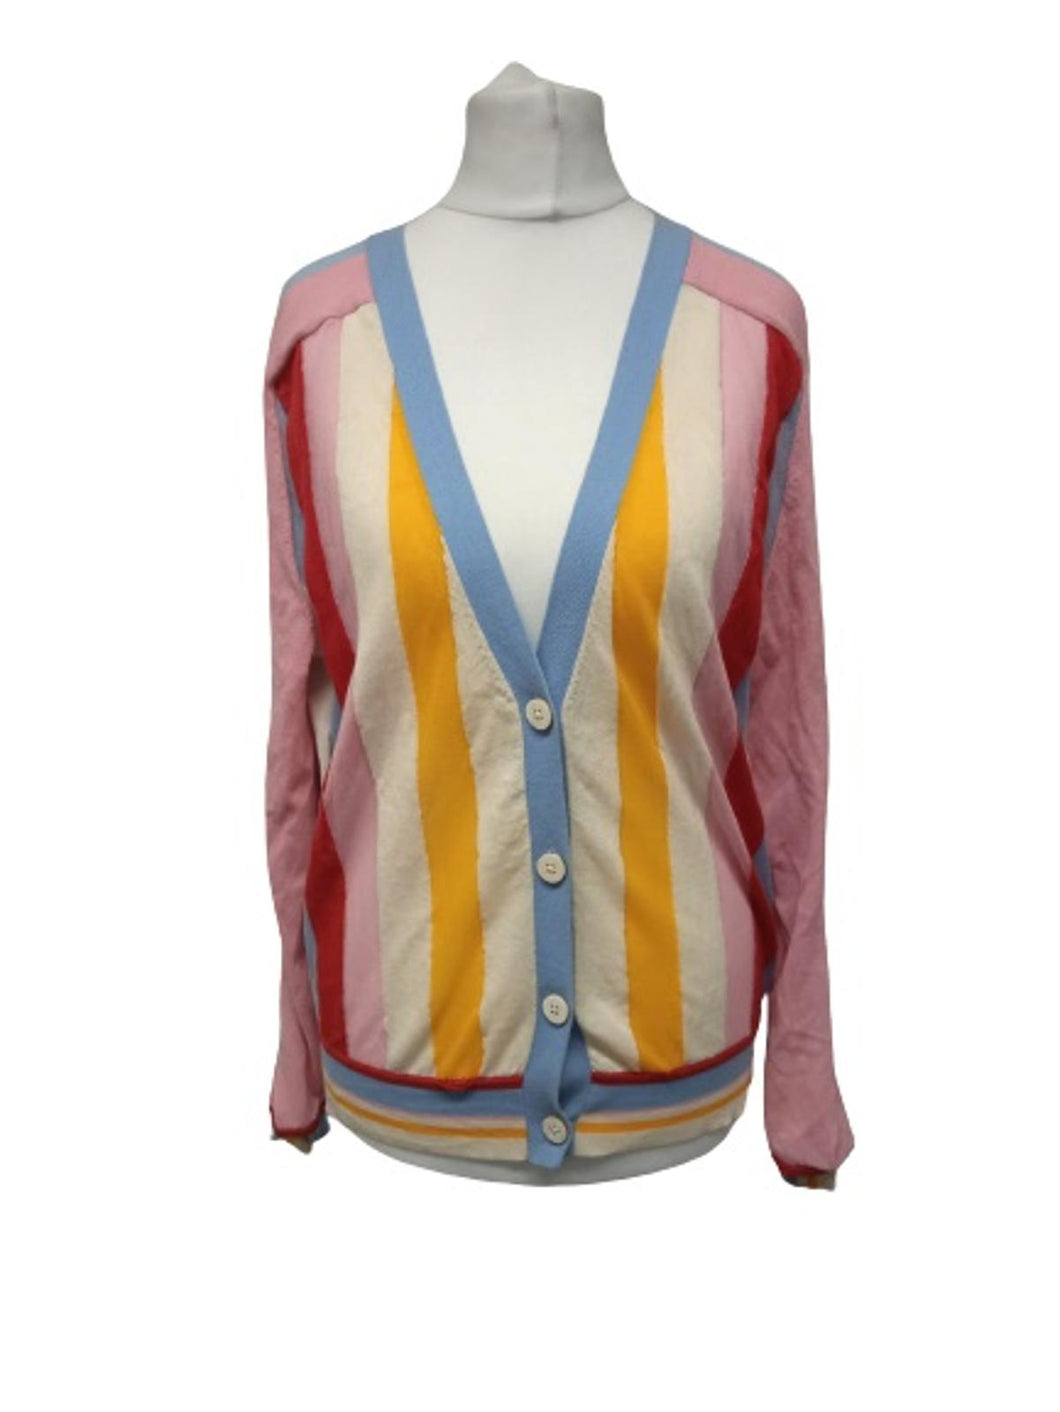 DIANE VON FURSTENBERG Ladies Multicoloured Cotton Blend Sheer Cardigan Size S